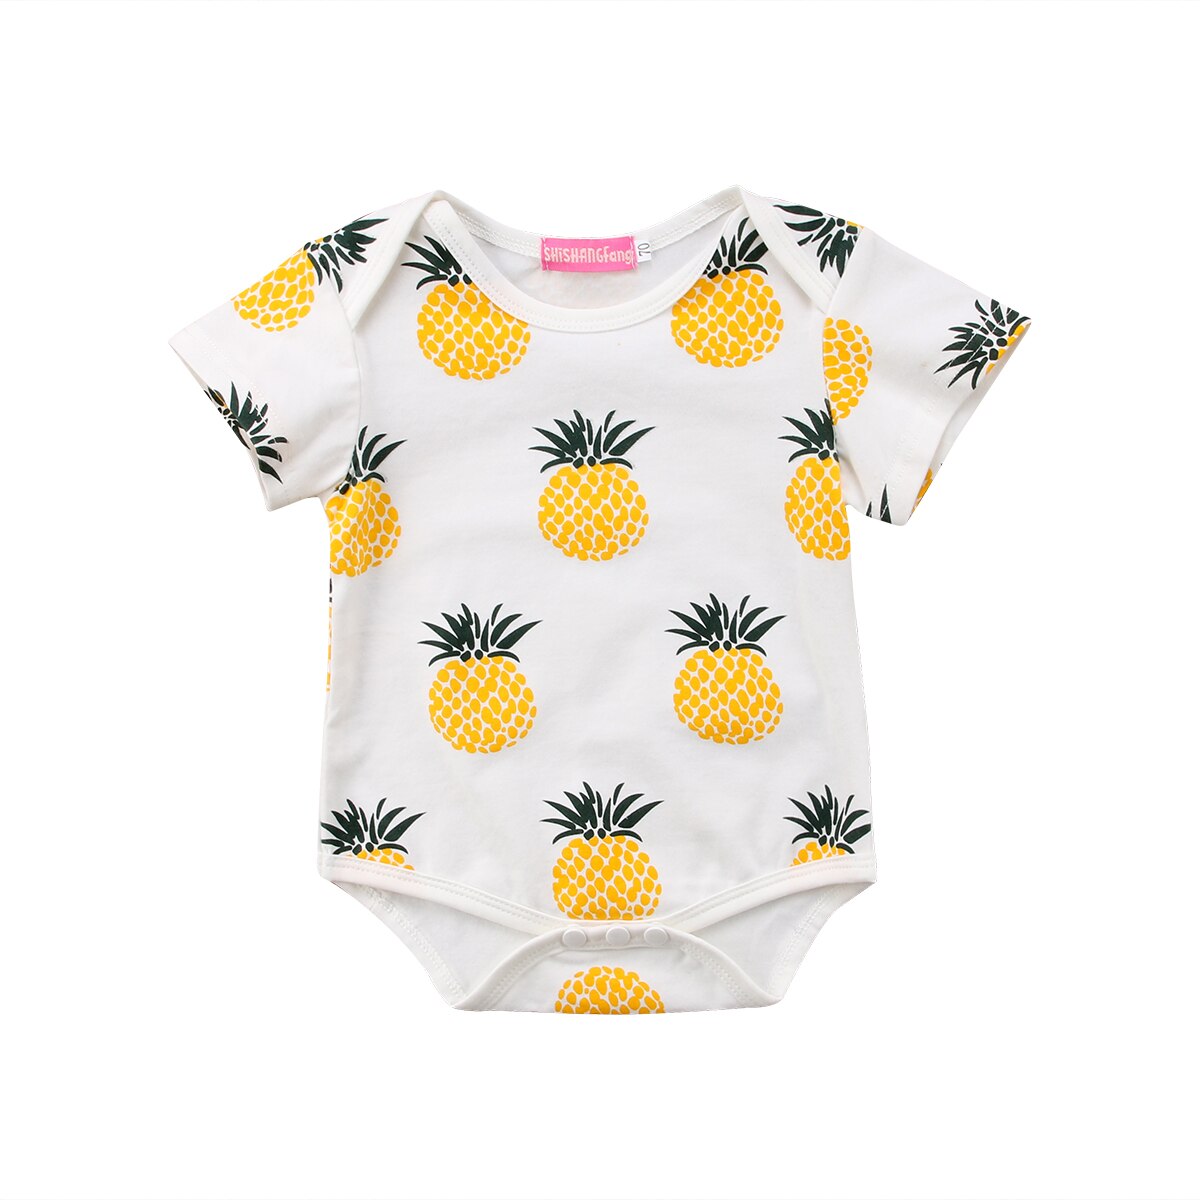 Sommer nyfødt romper børn baby pige dreng tøj kortærmet ananas telt romper jumpsuit outfits 0-24m: Gul / 100